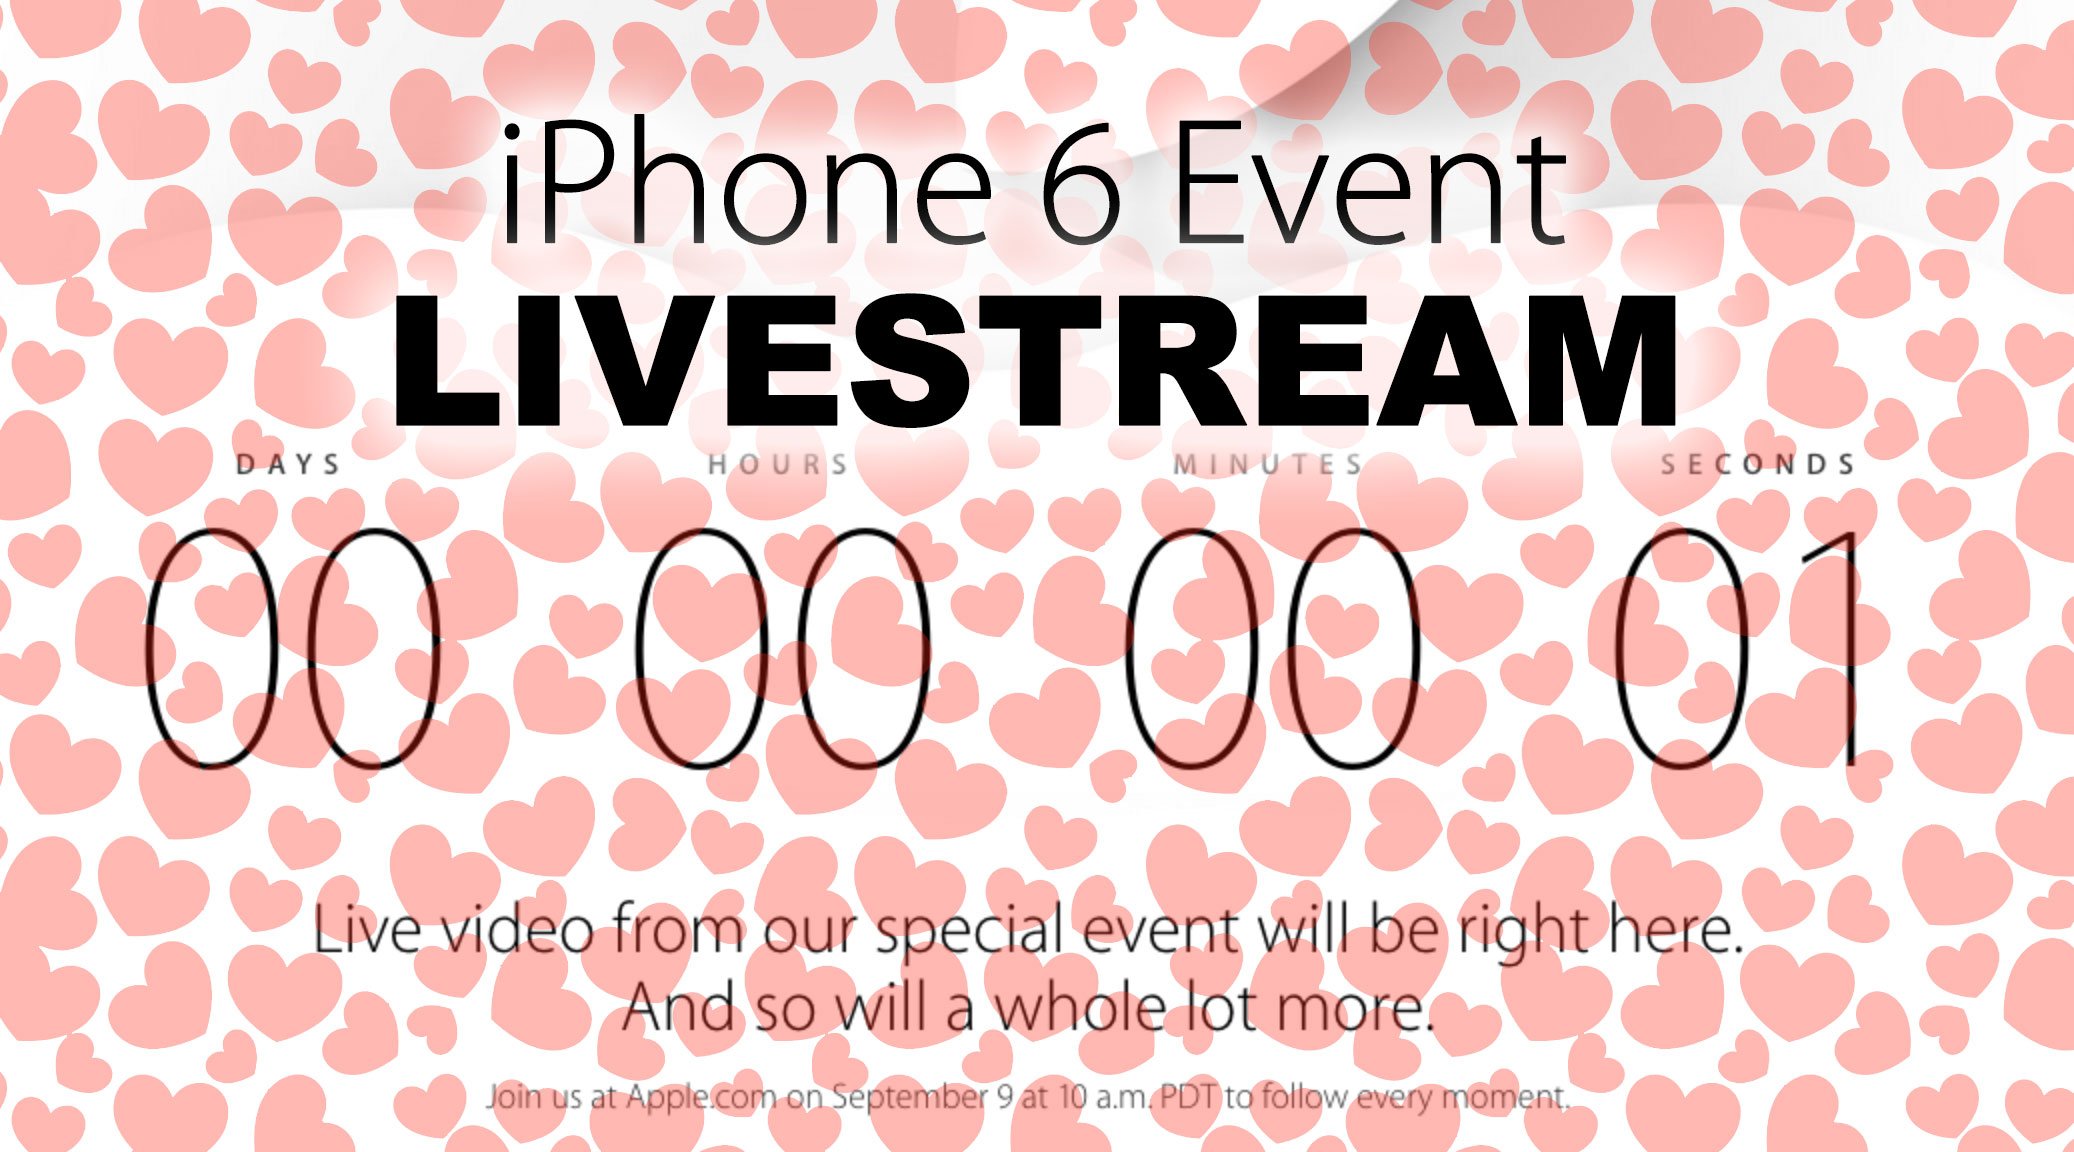 Livestream iPhone 6 Event: Apple kündigt Video Live-Stream an! 6